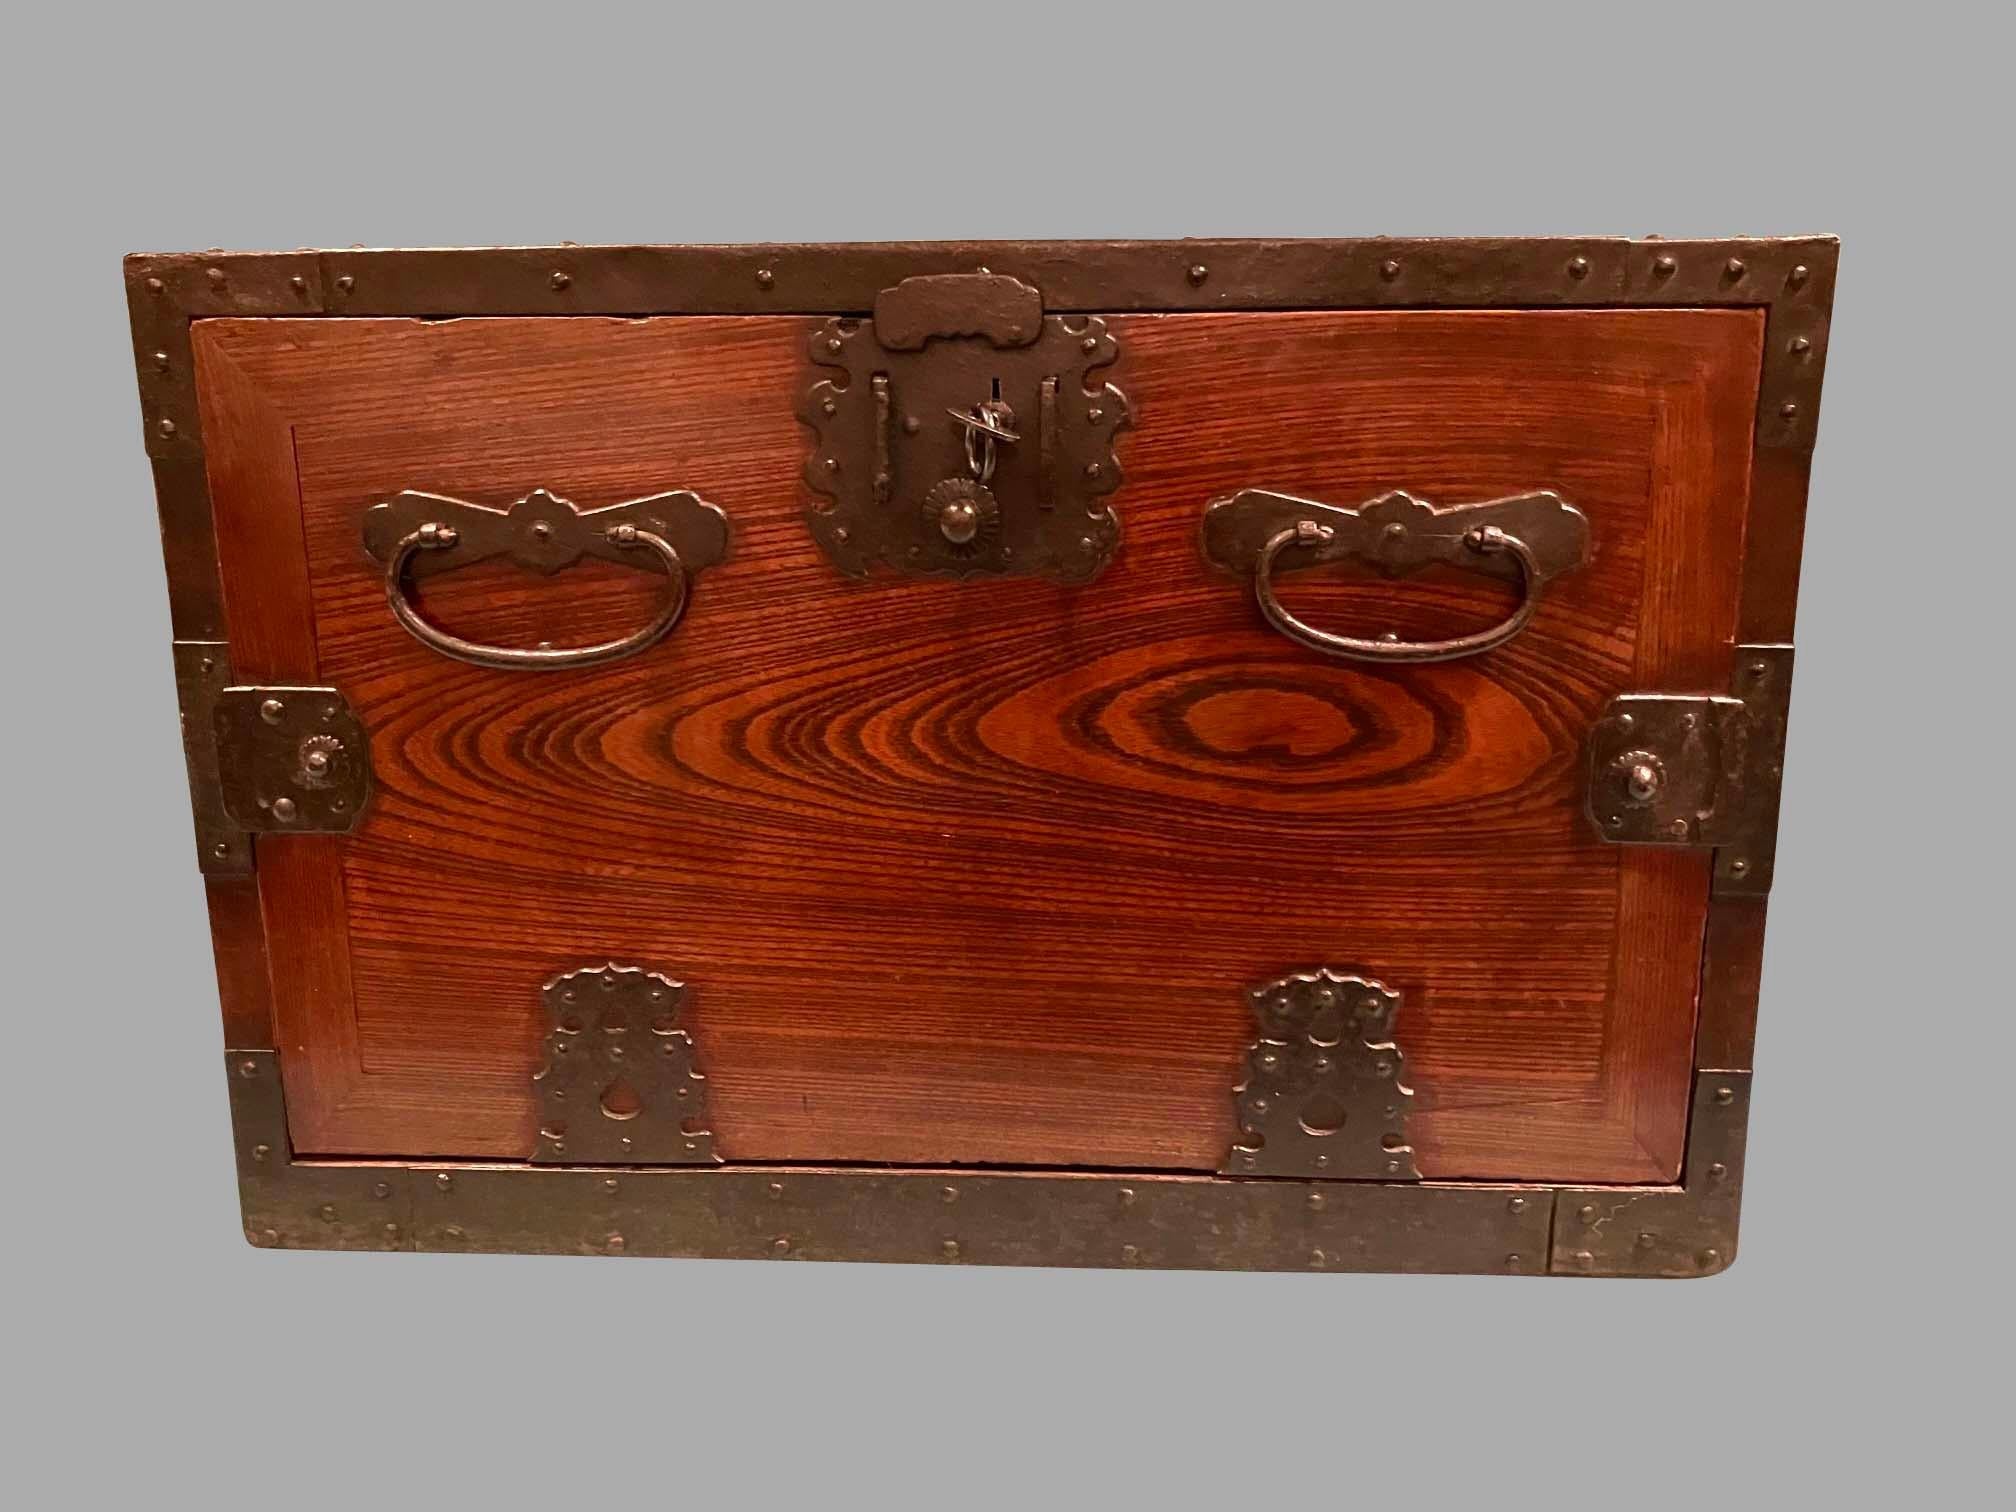 Ein japanischer, eisenbeschlagener Seekasten oder Tischschrank aus der Meiji-Zeit. Der abnehmbare Frontdeckel lässt sich öffnen und gibt den Blick auf ein Inneres mit 5 Schubladen unterschiedlicher Größe frei. Das Stück ist mit dekorativen